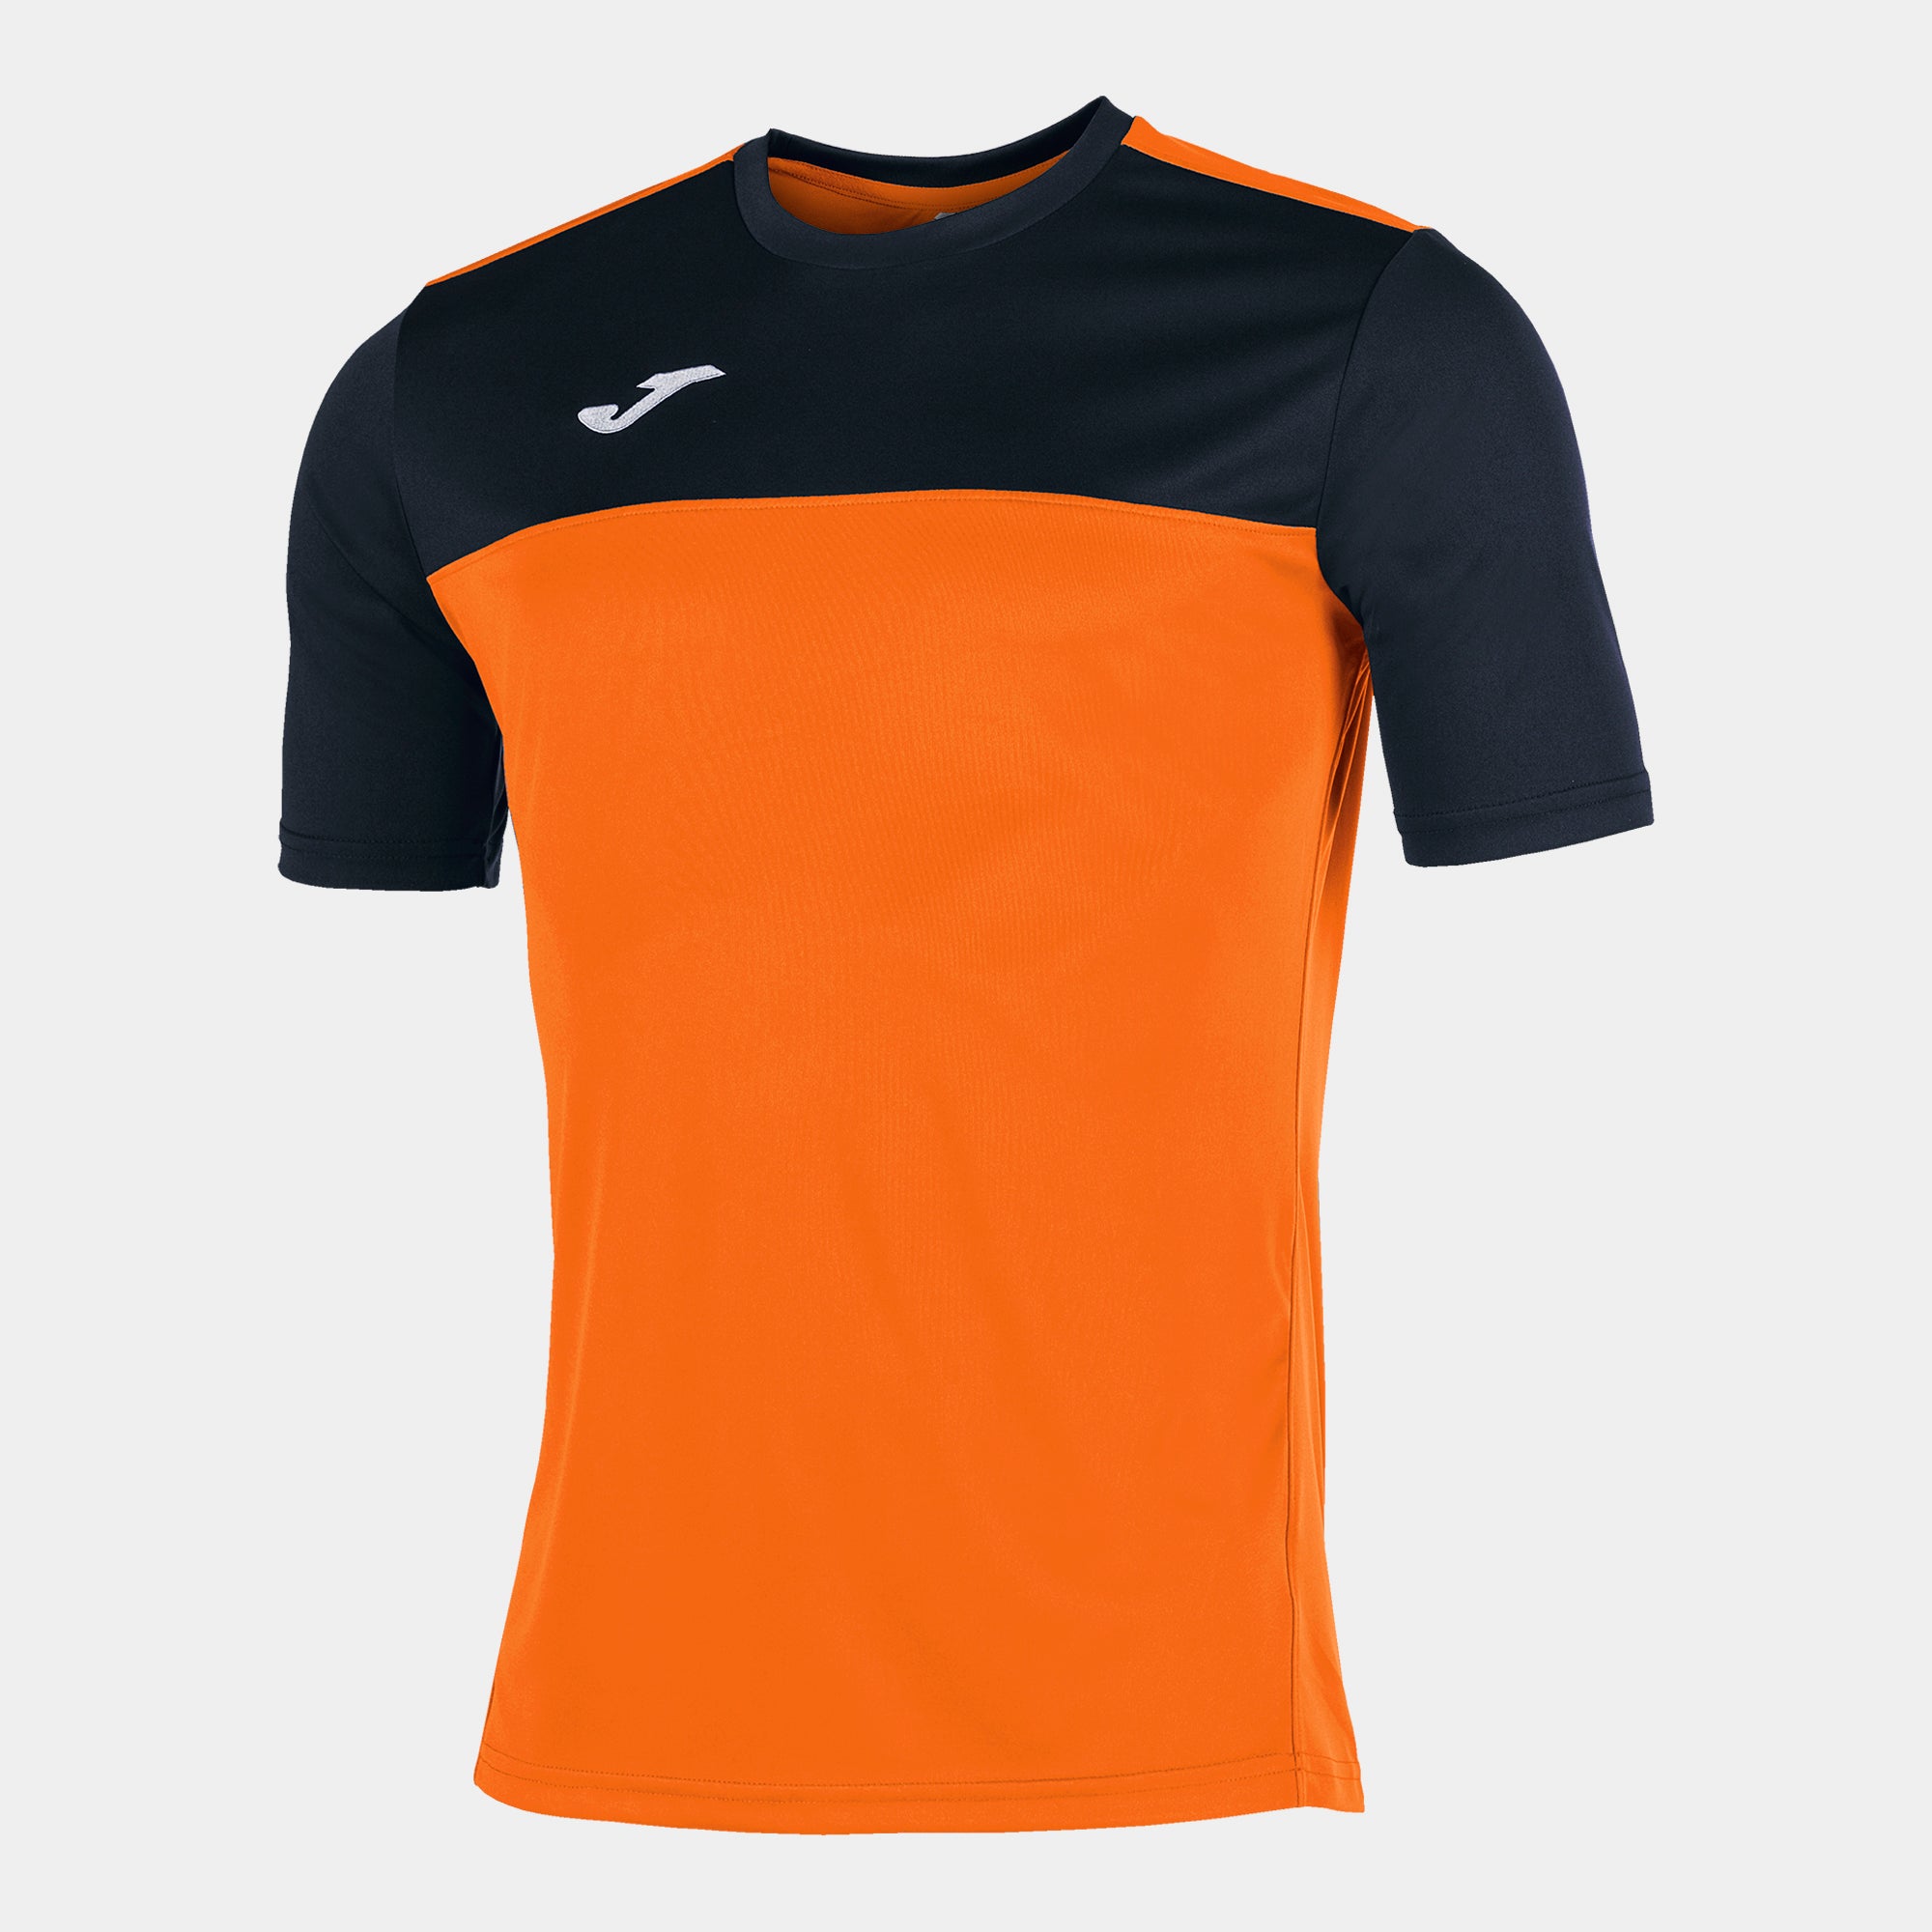 Joma Winner Short Sleeved T-Shirt - Orange/Black